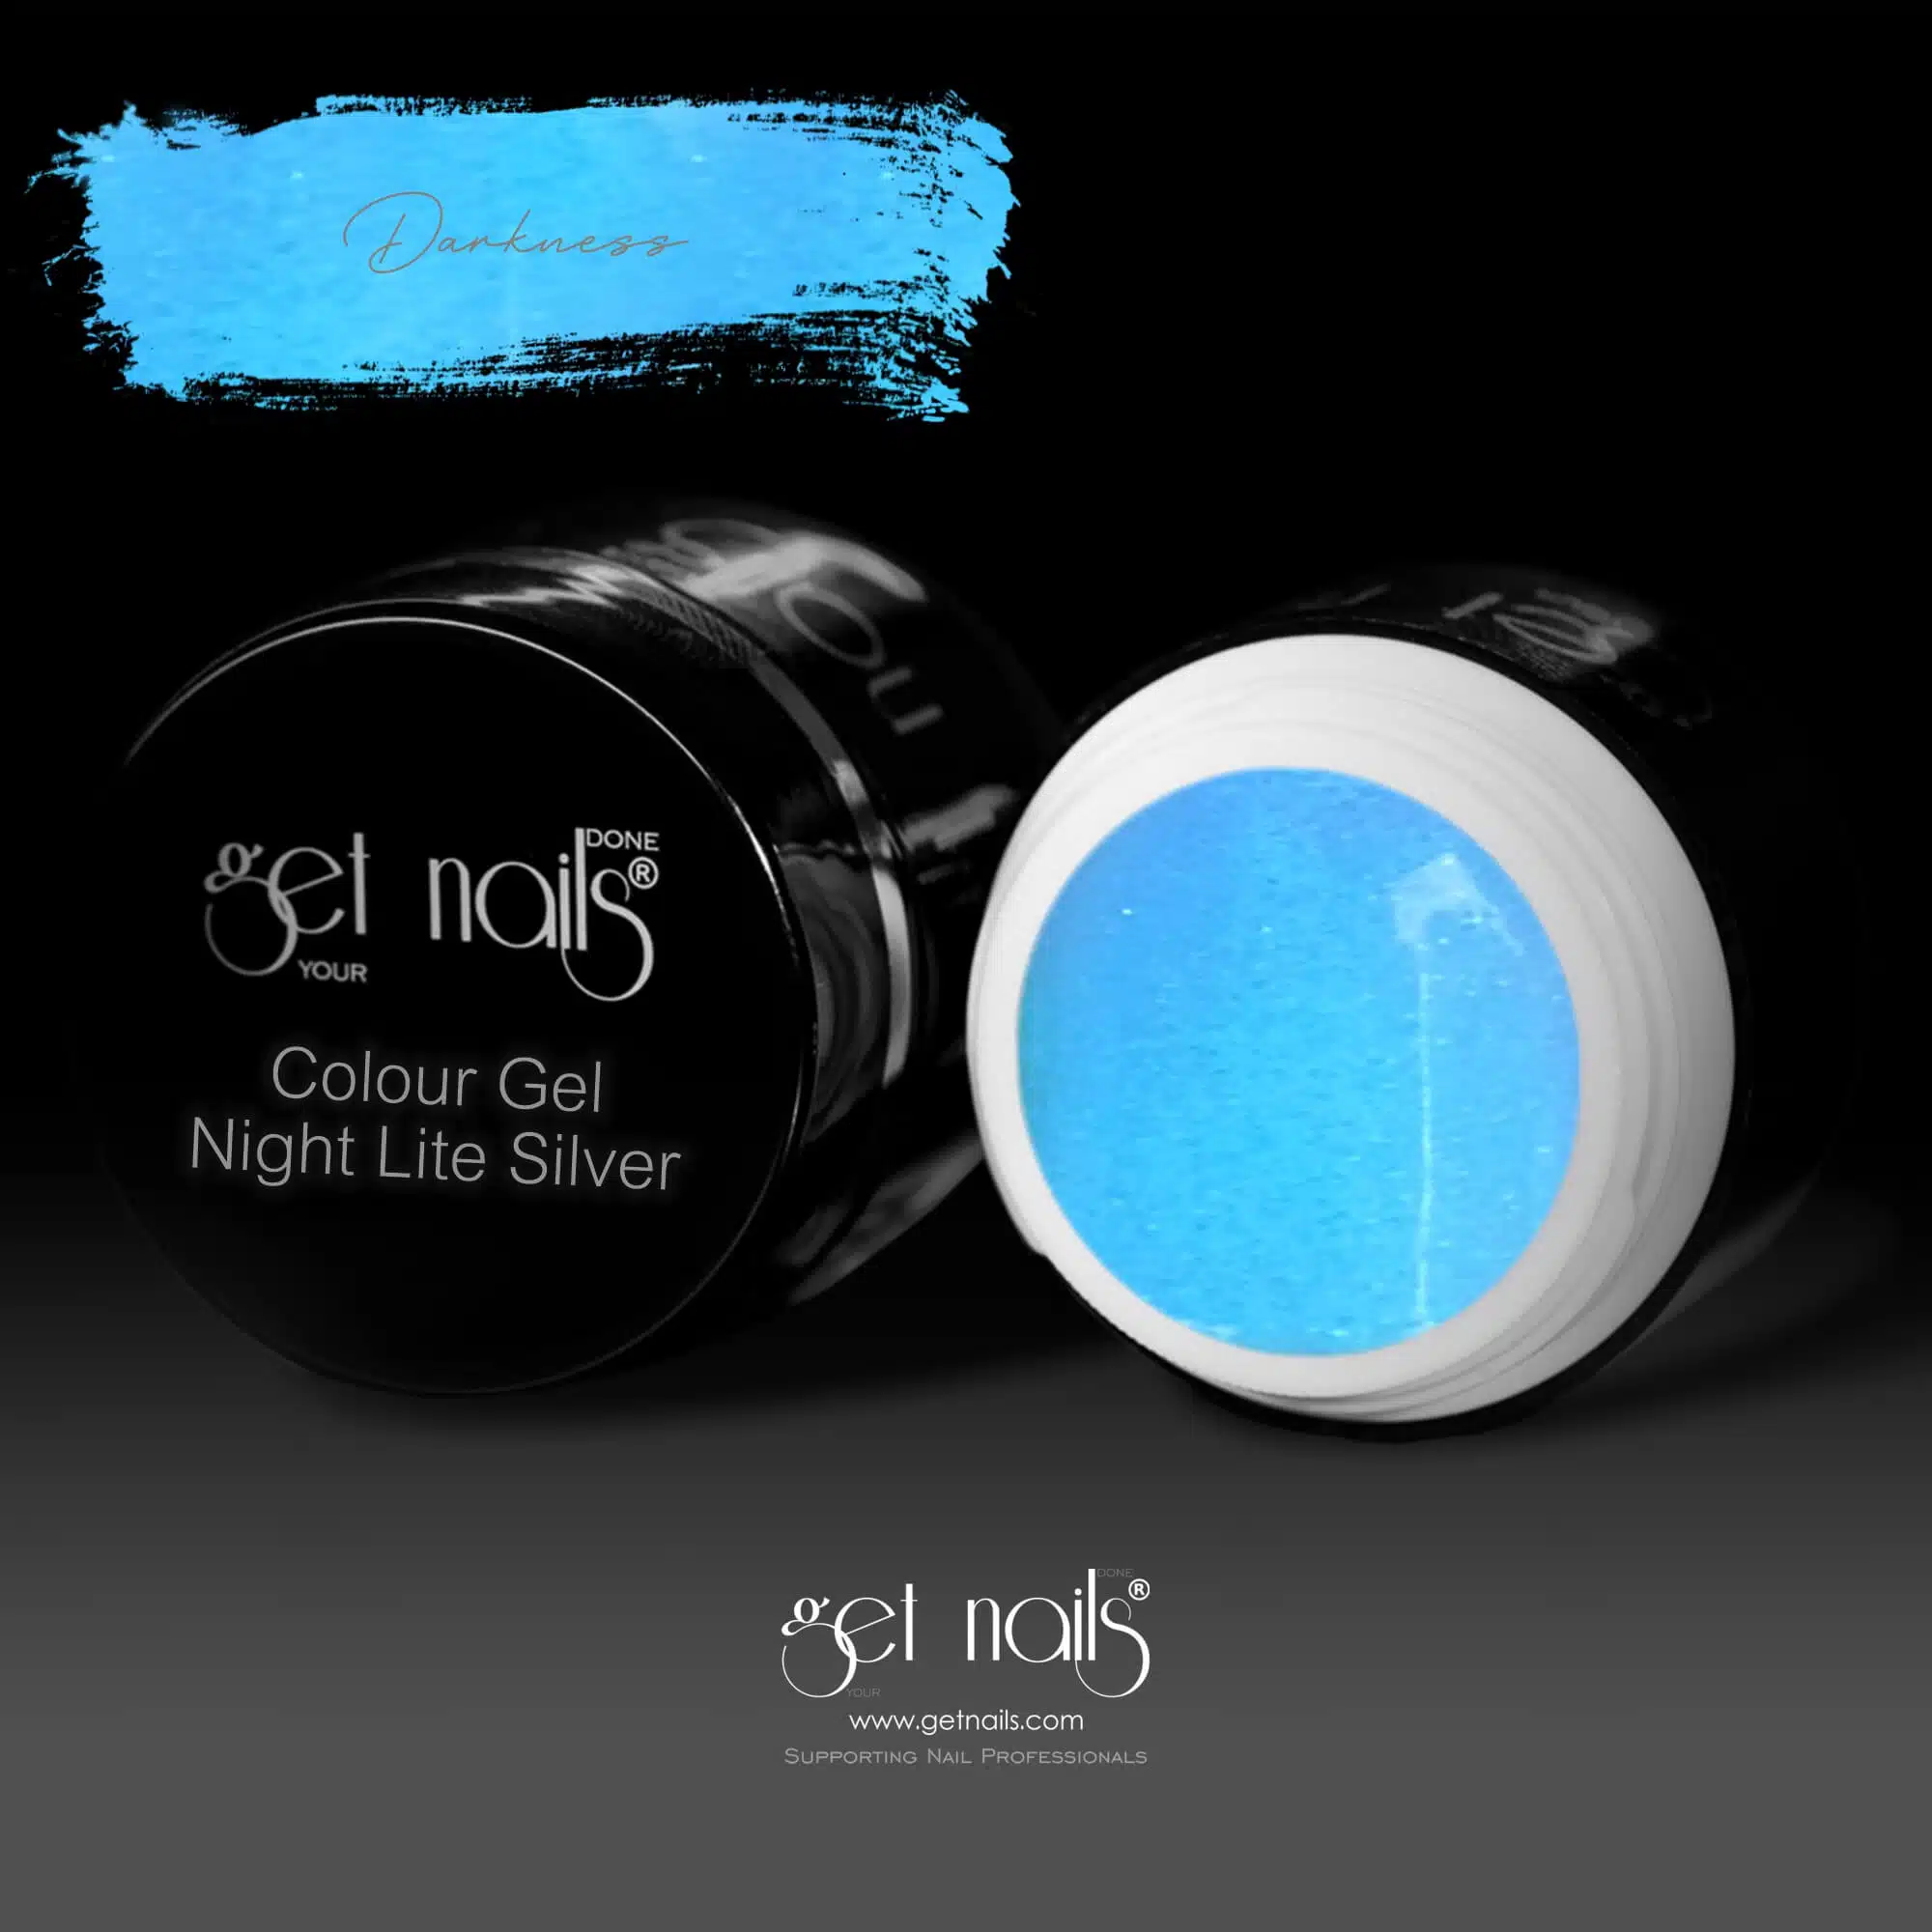 Get Nails Austria - Night Lite Colour Gel Silver 5g darkness